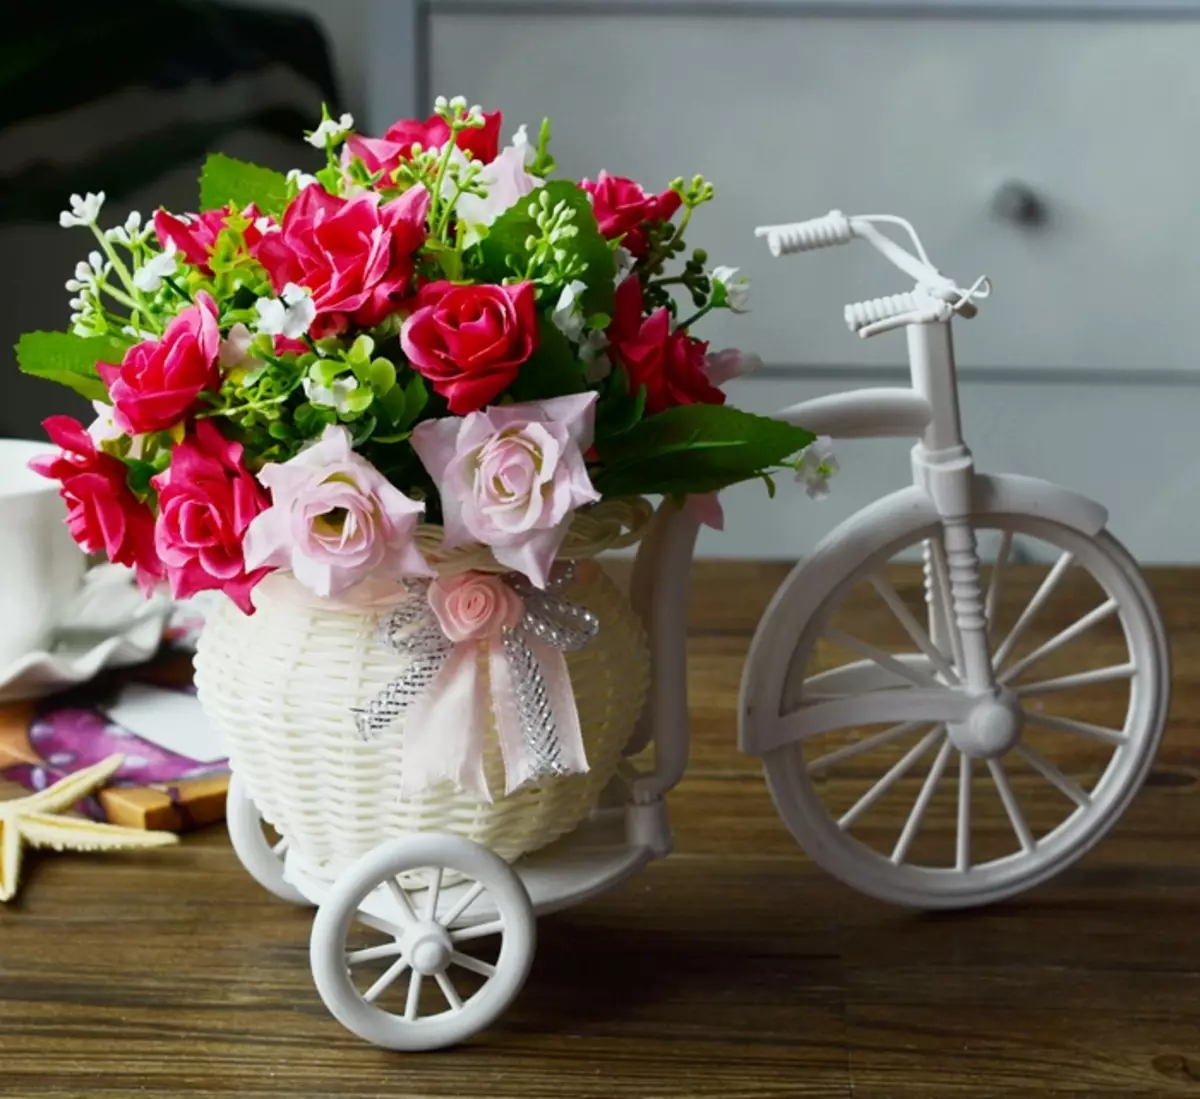 Կանգնած հեծանիվ ծաղիկների համար. Դարբնոցային մոդելներ եւ կակաոյի հեծանիվներ, հատակի դեկորատիվ ծաղկեփունջ, փայտե եւ այլ ծաղիկների հեծանիվներ 8458_27